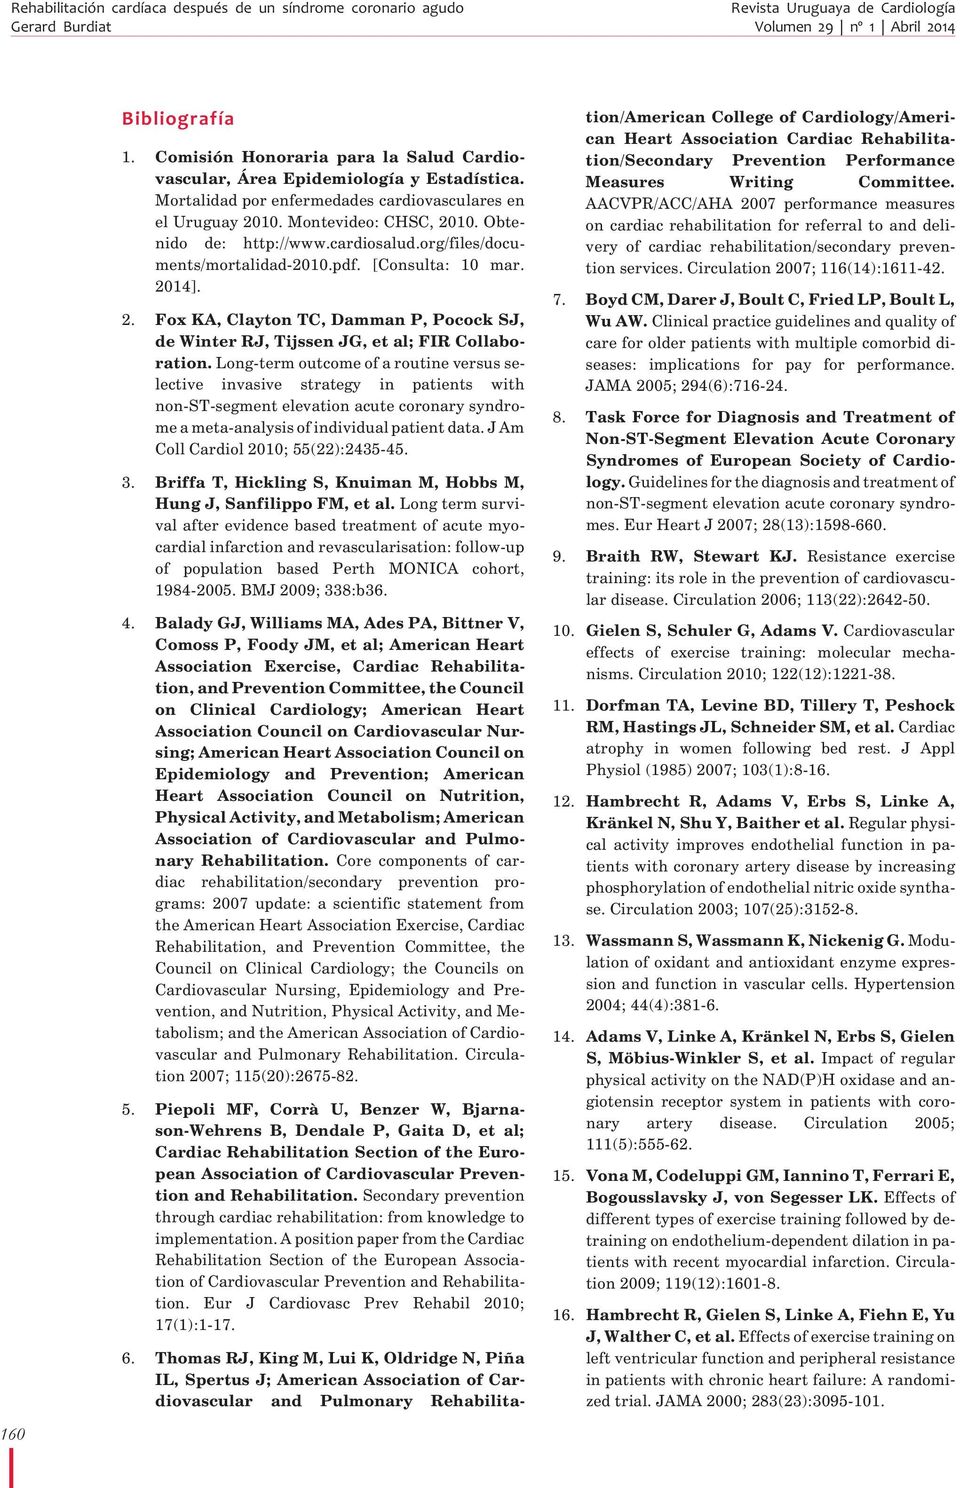 cardiosalud.org/files/documents/mortalidad-2010.pdf. [Consulta: 10 mar. 2014]. 2. Fox KA, Clayton TC, Damman P, Pocock SJ, de Winter RJ, Tijssen JG, et al; FIR Collaboration.